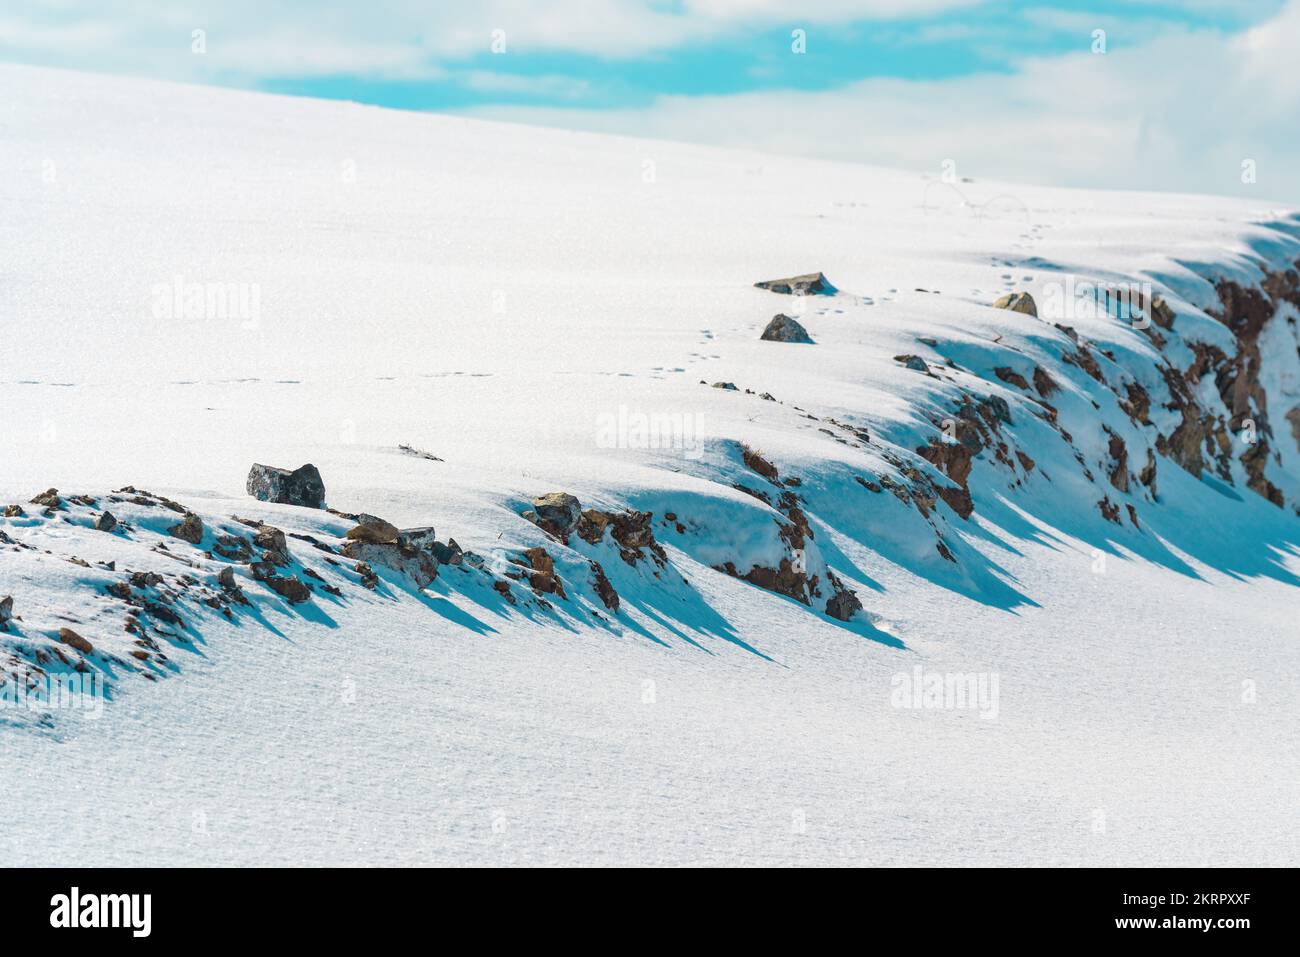 Paisaje de invierno, montaña cubierta de nieve blanca con cielo azul en el fondo Foto de stock